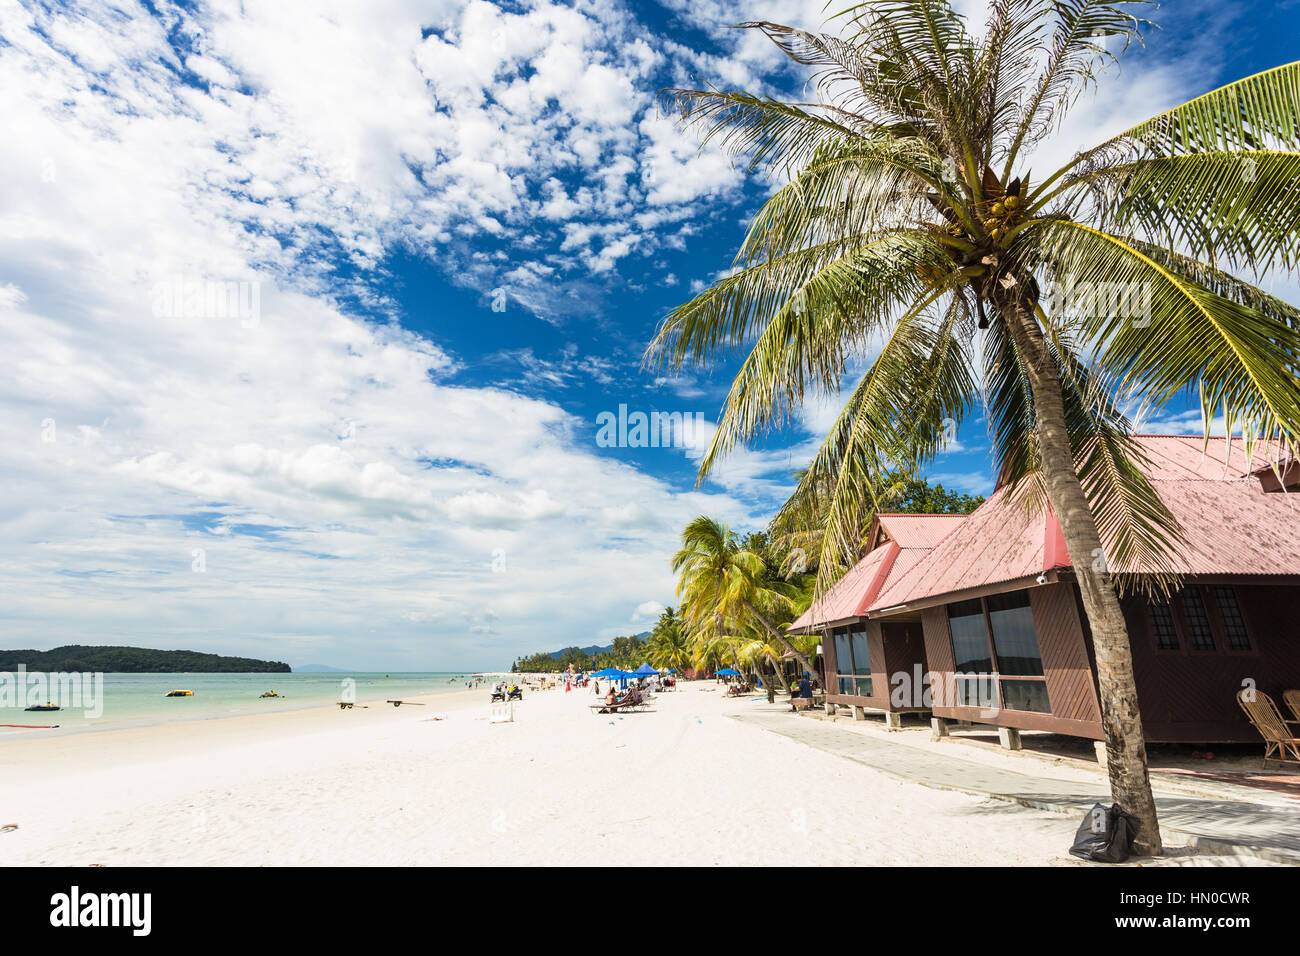 Palme und Bungalow am Pantai Cenang, der beliebteste Strand auf der Insel Langkawi entlang der Andamanensee in Malaysia Kedah Zustand. Stockfoto